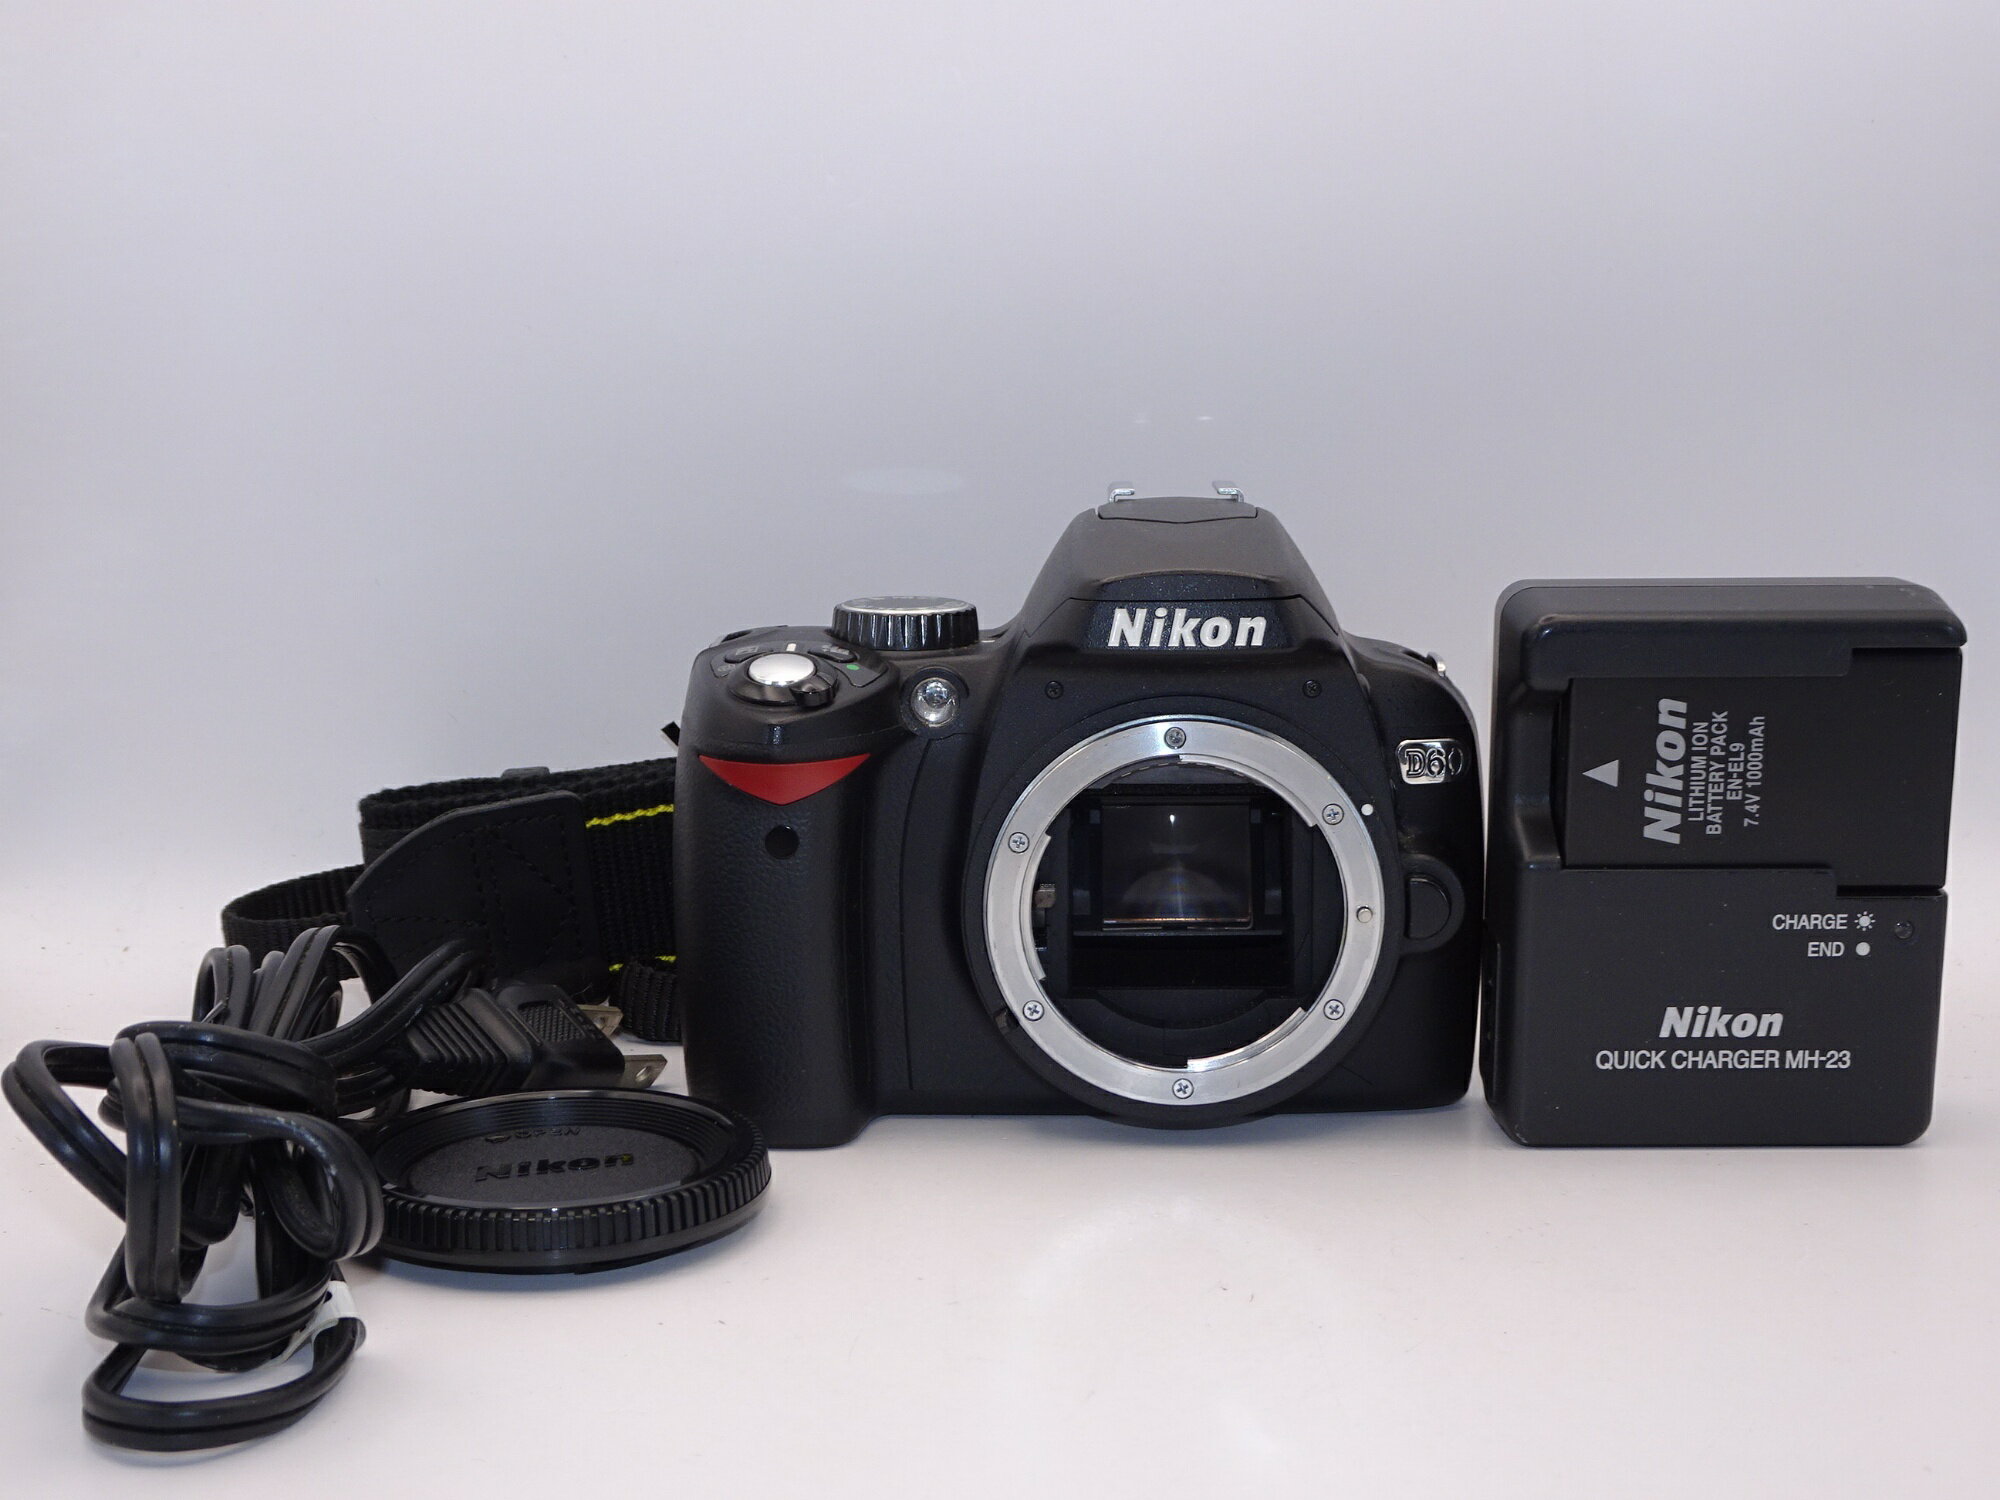 【中古】【外観並級】Nikon デジタル一眼レフカメラ D60 ボディ